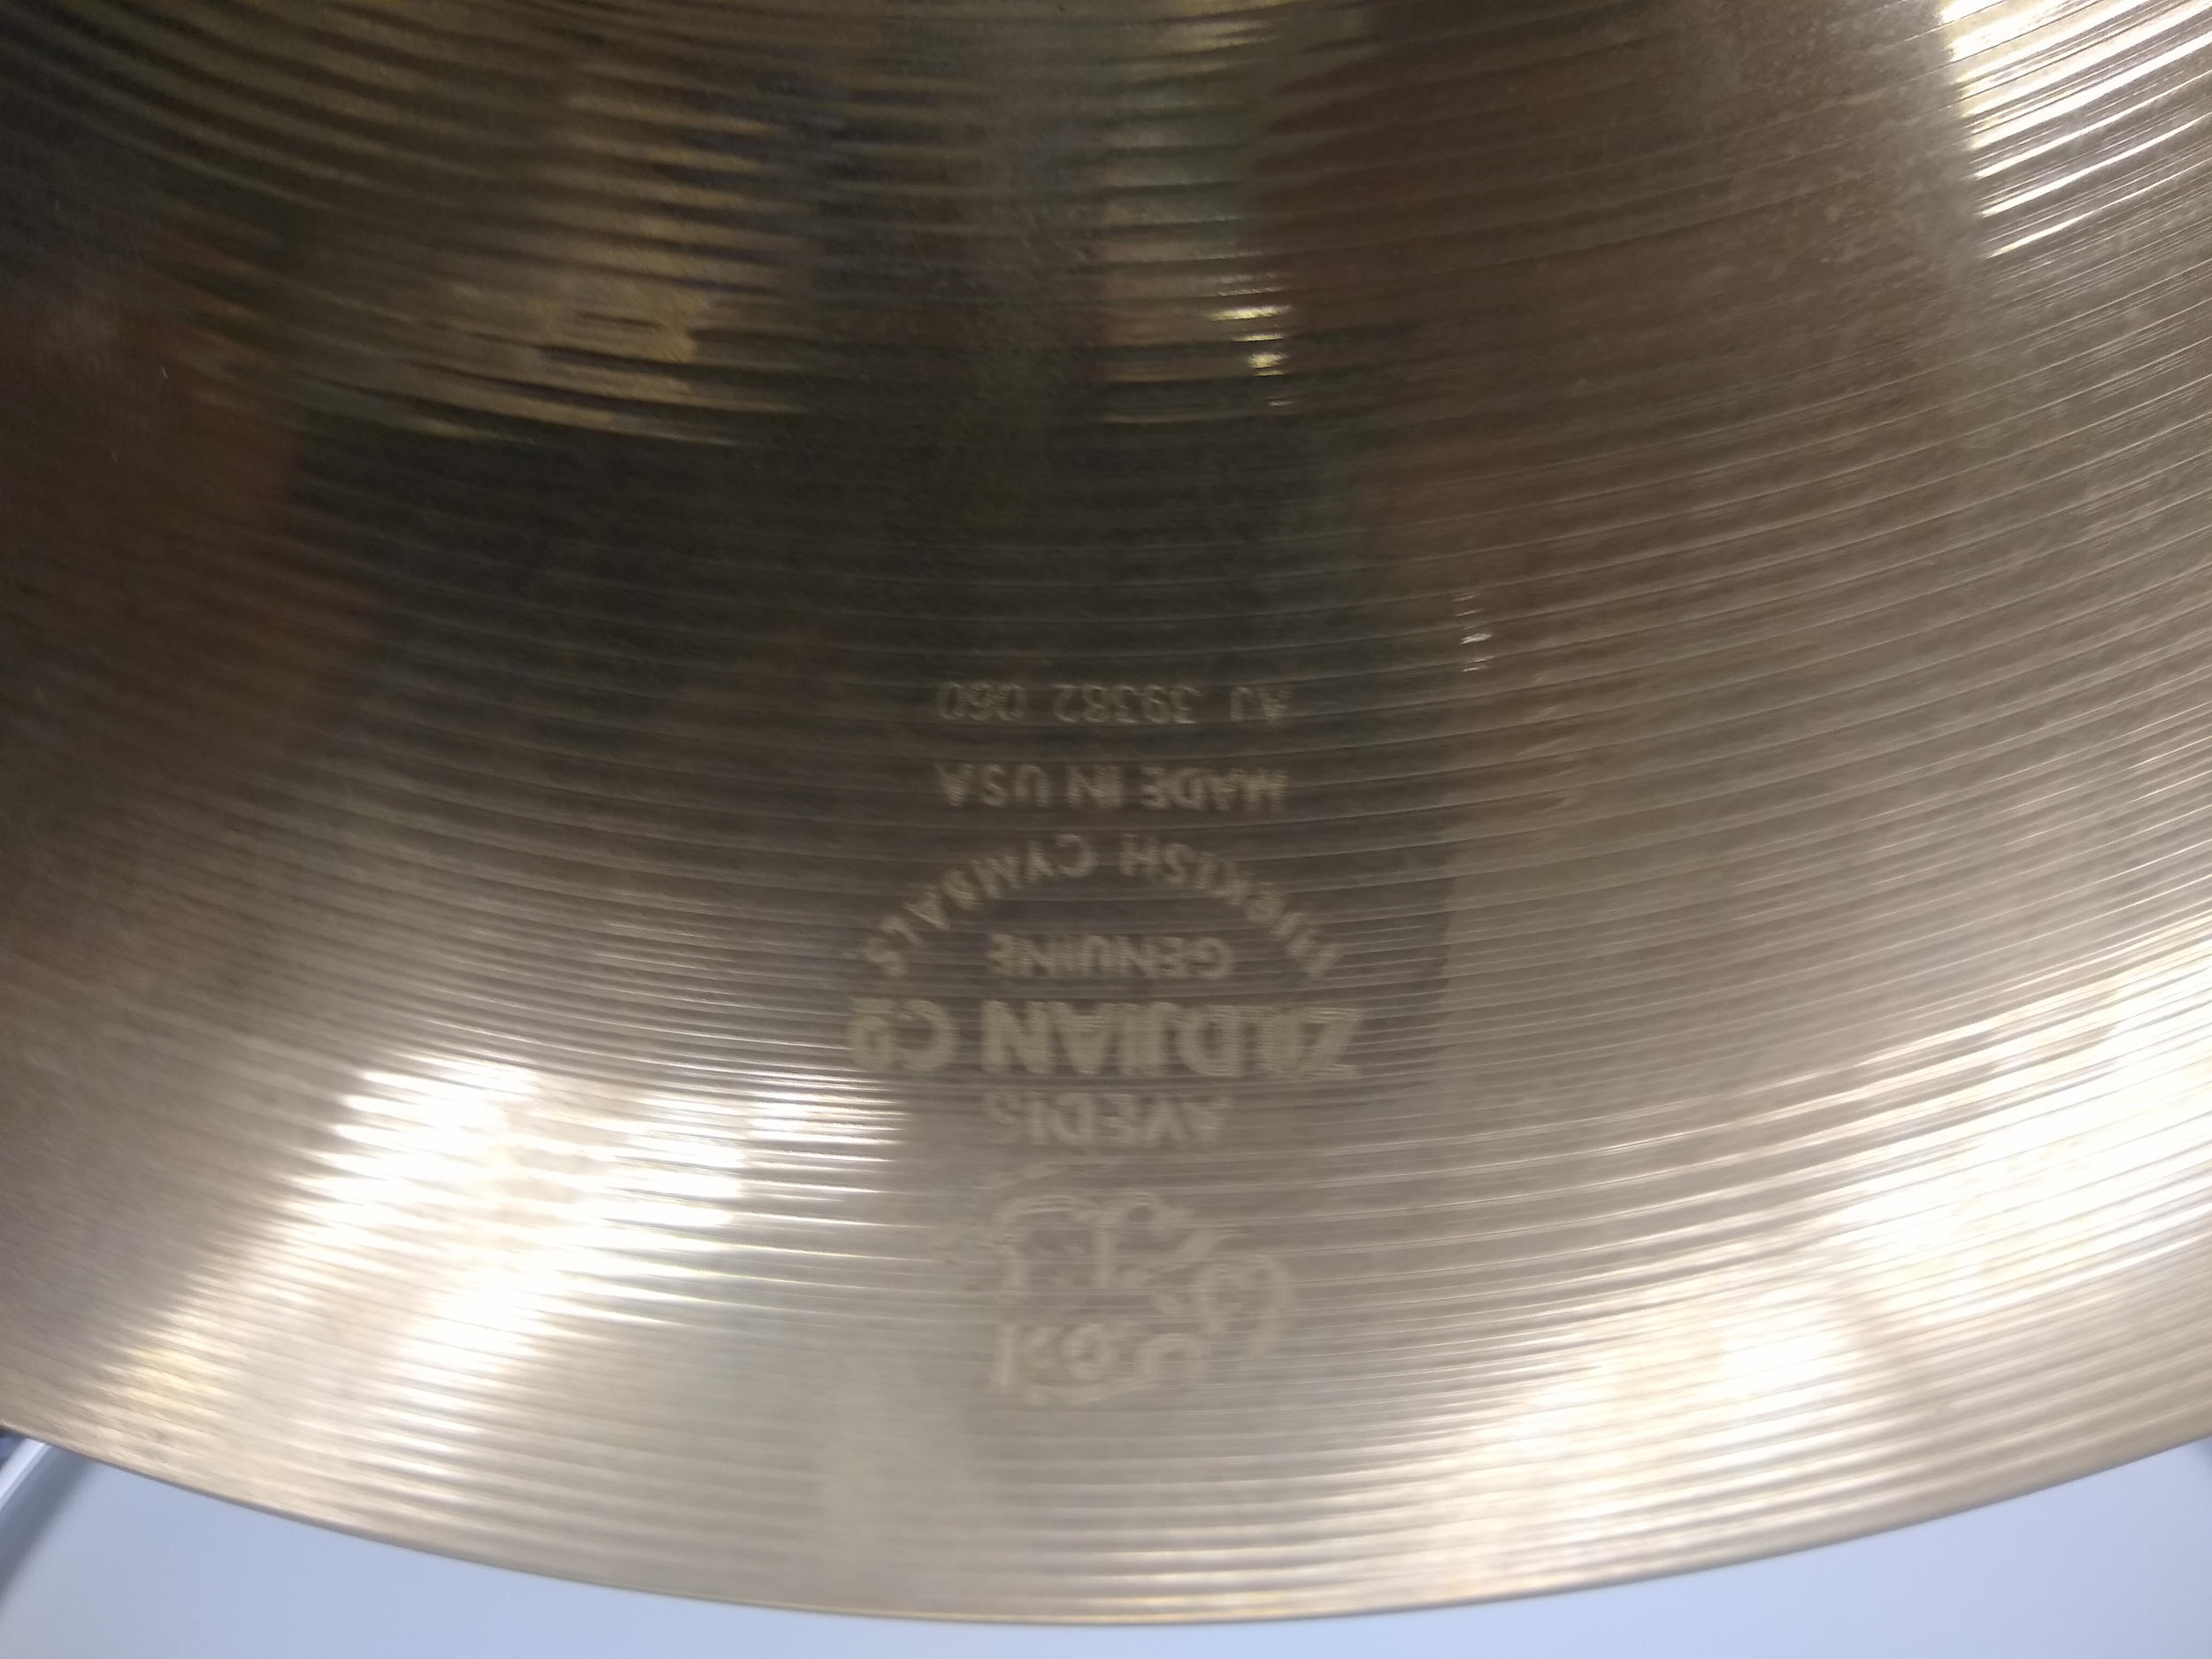 Zildjian 14” A Custom Hi-hat Cymbal